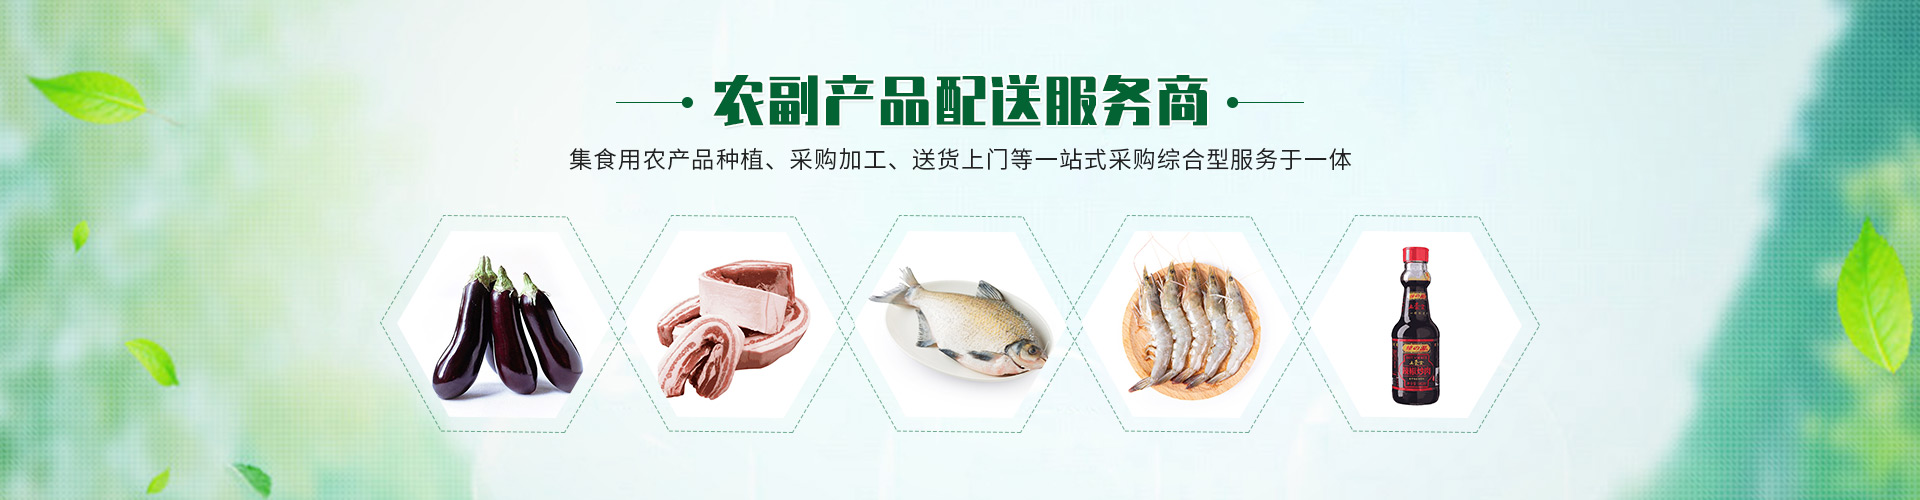 上海康鮮農副產品配送服務有限公司